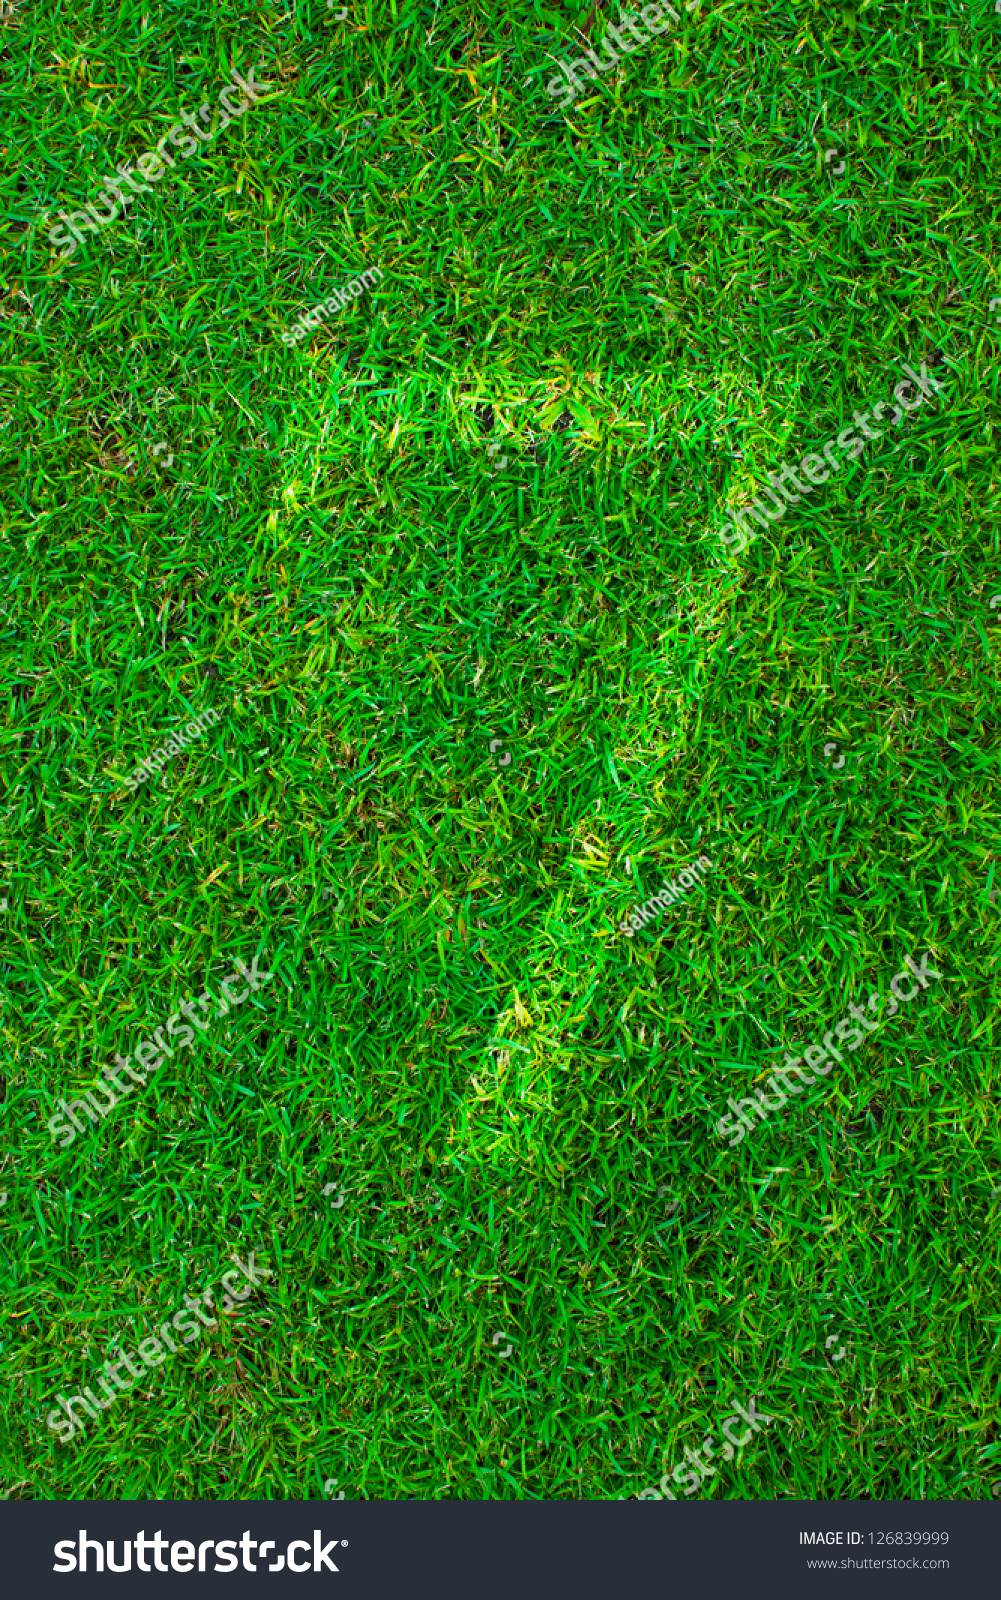 绿色草地上白色的行号(1 2 3 4 5 6 7 8 9 0)